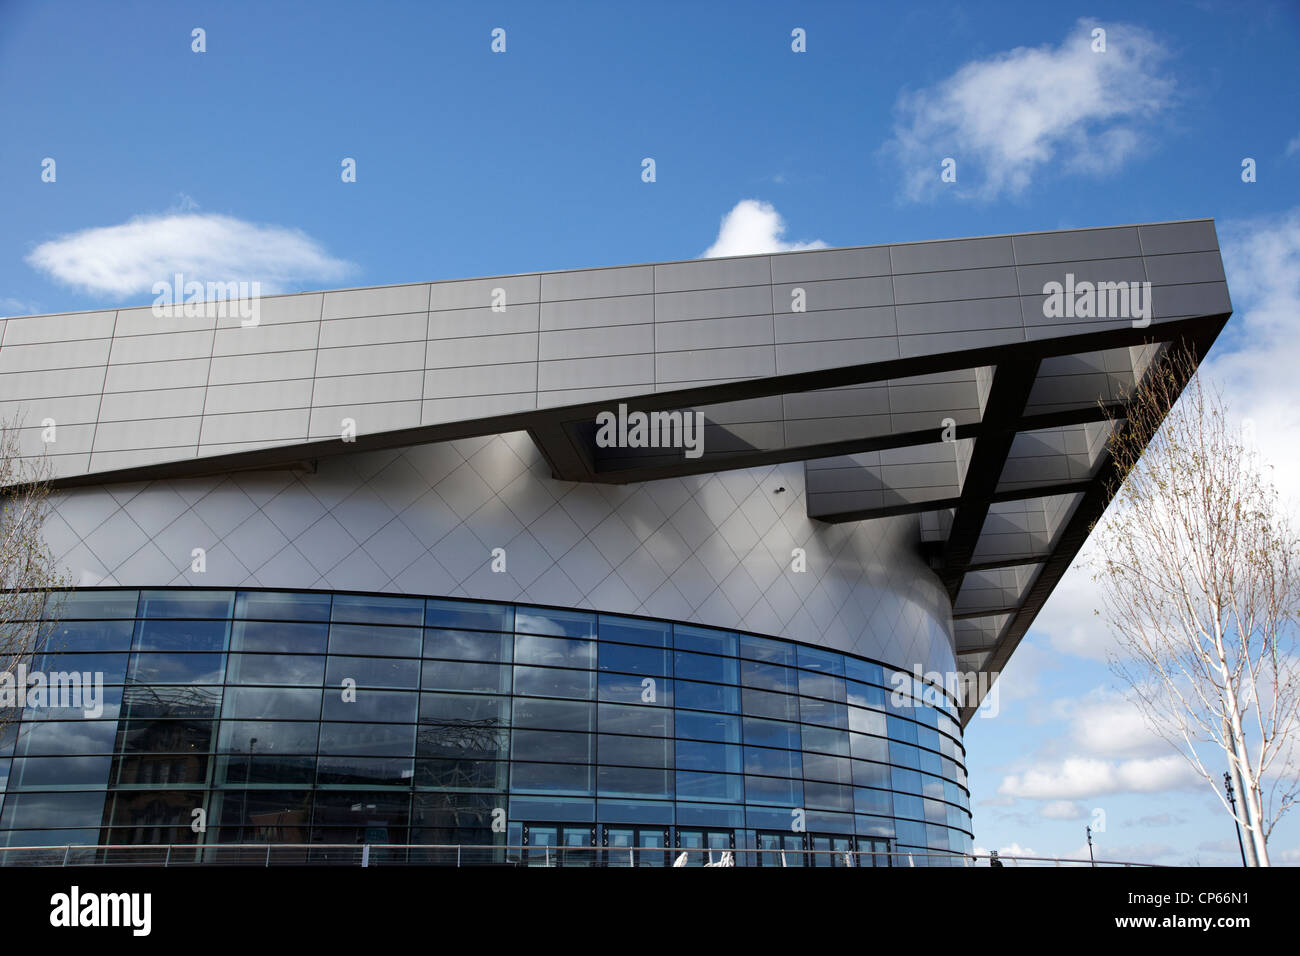 Emirate Arena ehemaligen Commonwealth Arena und Sir Chris Hoy Velodrom Glasgow Schottland UK Stockfoto